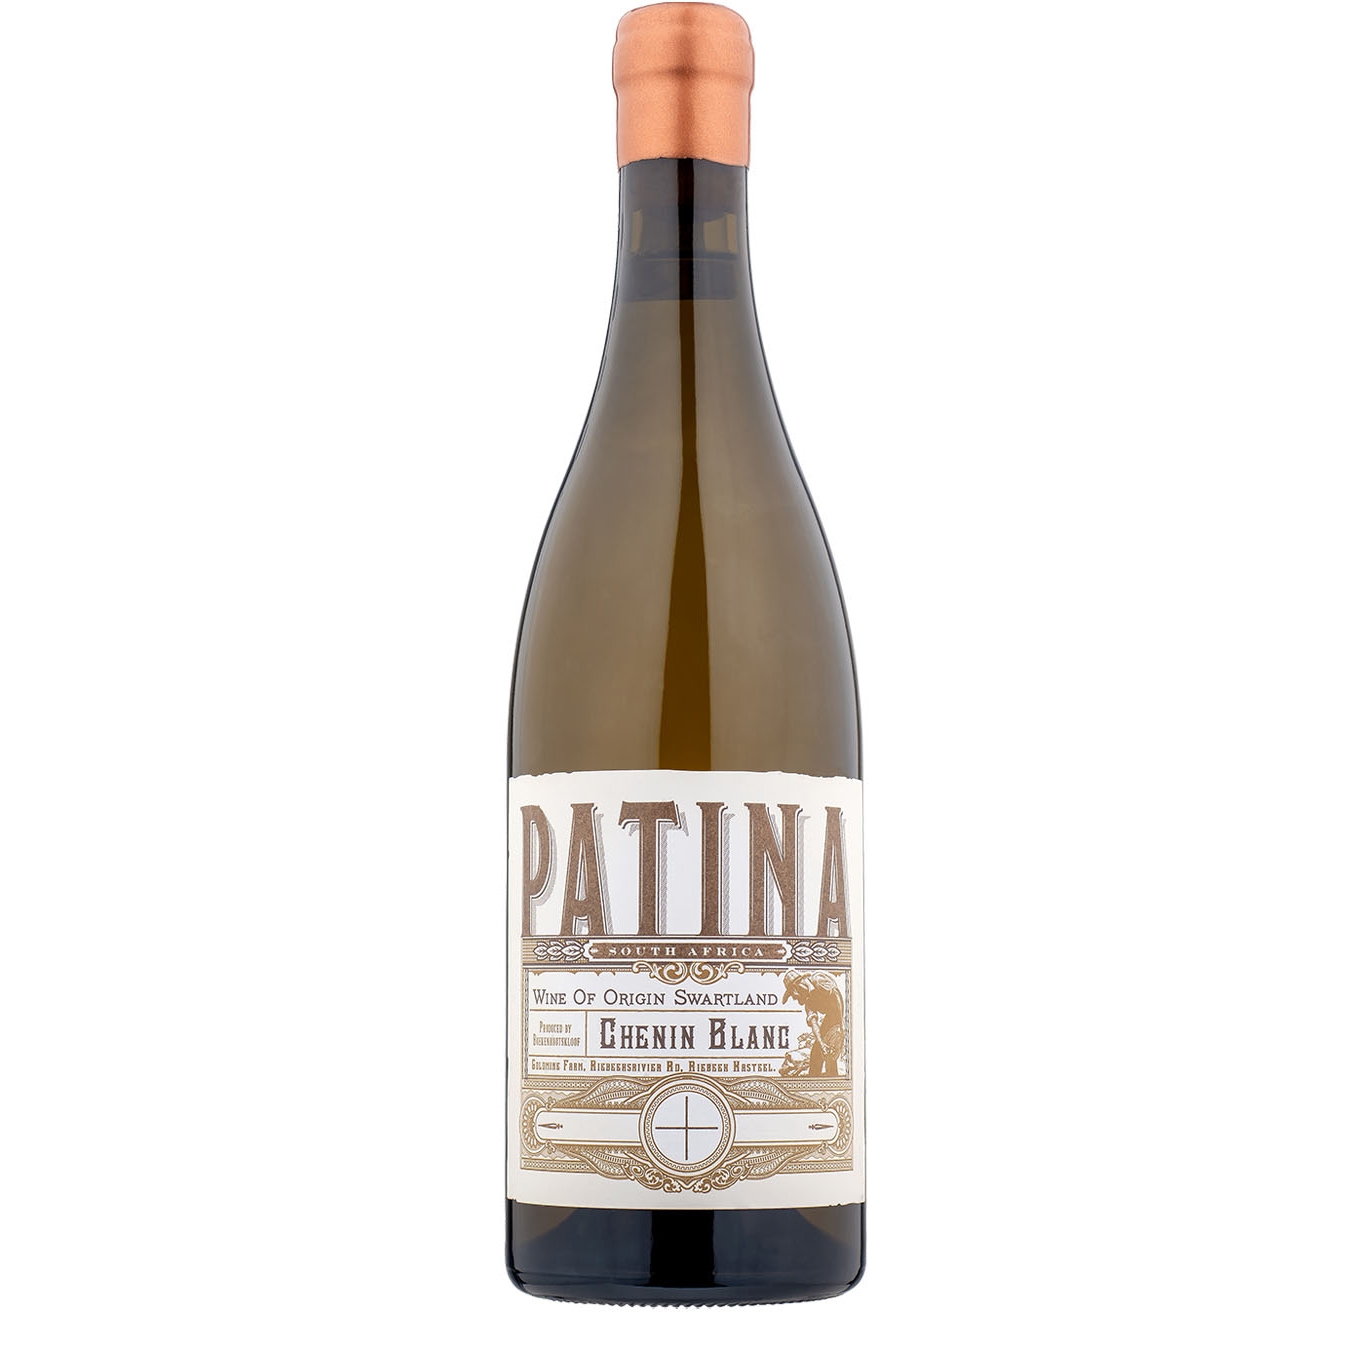 Boekenhoutskloof Patina Chenin Blanc 2019 White Wine